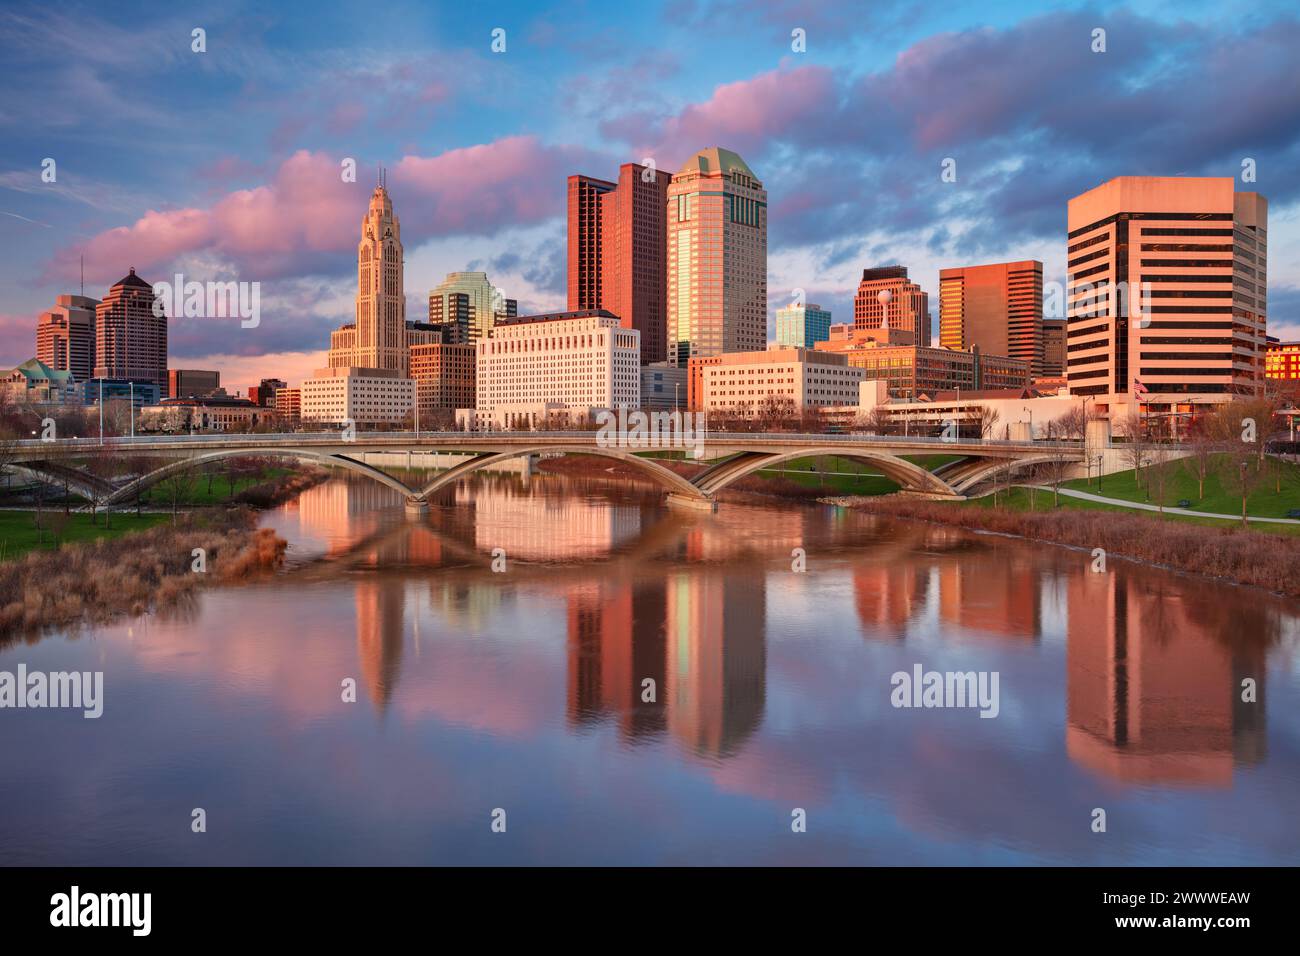 Columbus, Ohio, Stati Uniti. Immagine del paesaggio urbano di Columbus, Ohio, skyline del centro degli Stati Uniti con il riflesso della città sul fiume Scioto al tramonto primaverile. Foto Stock